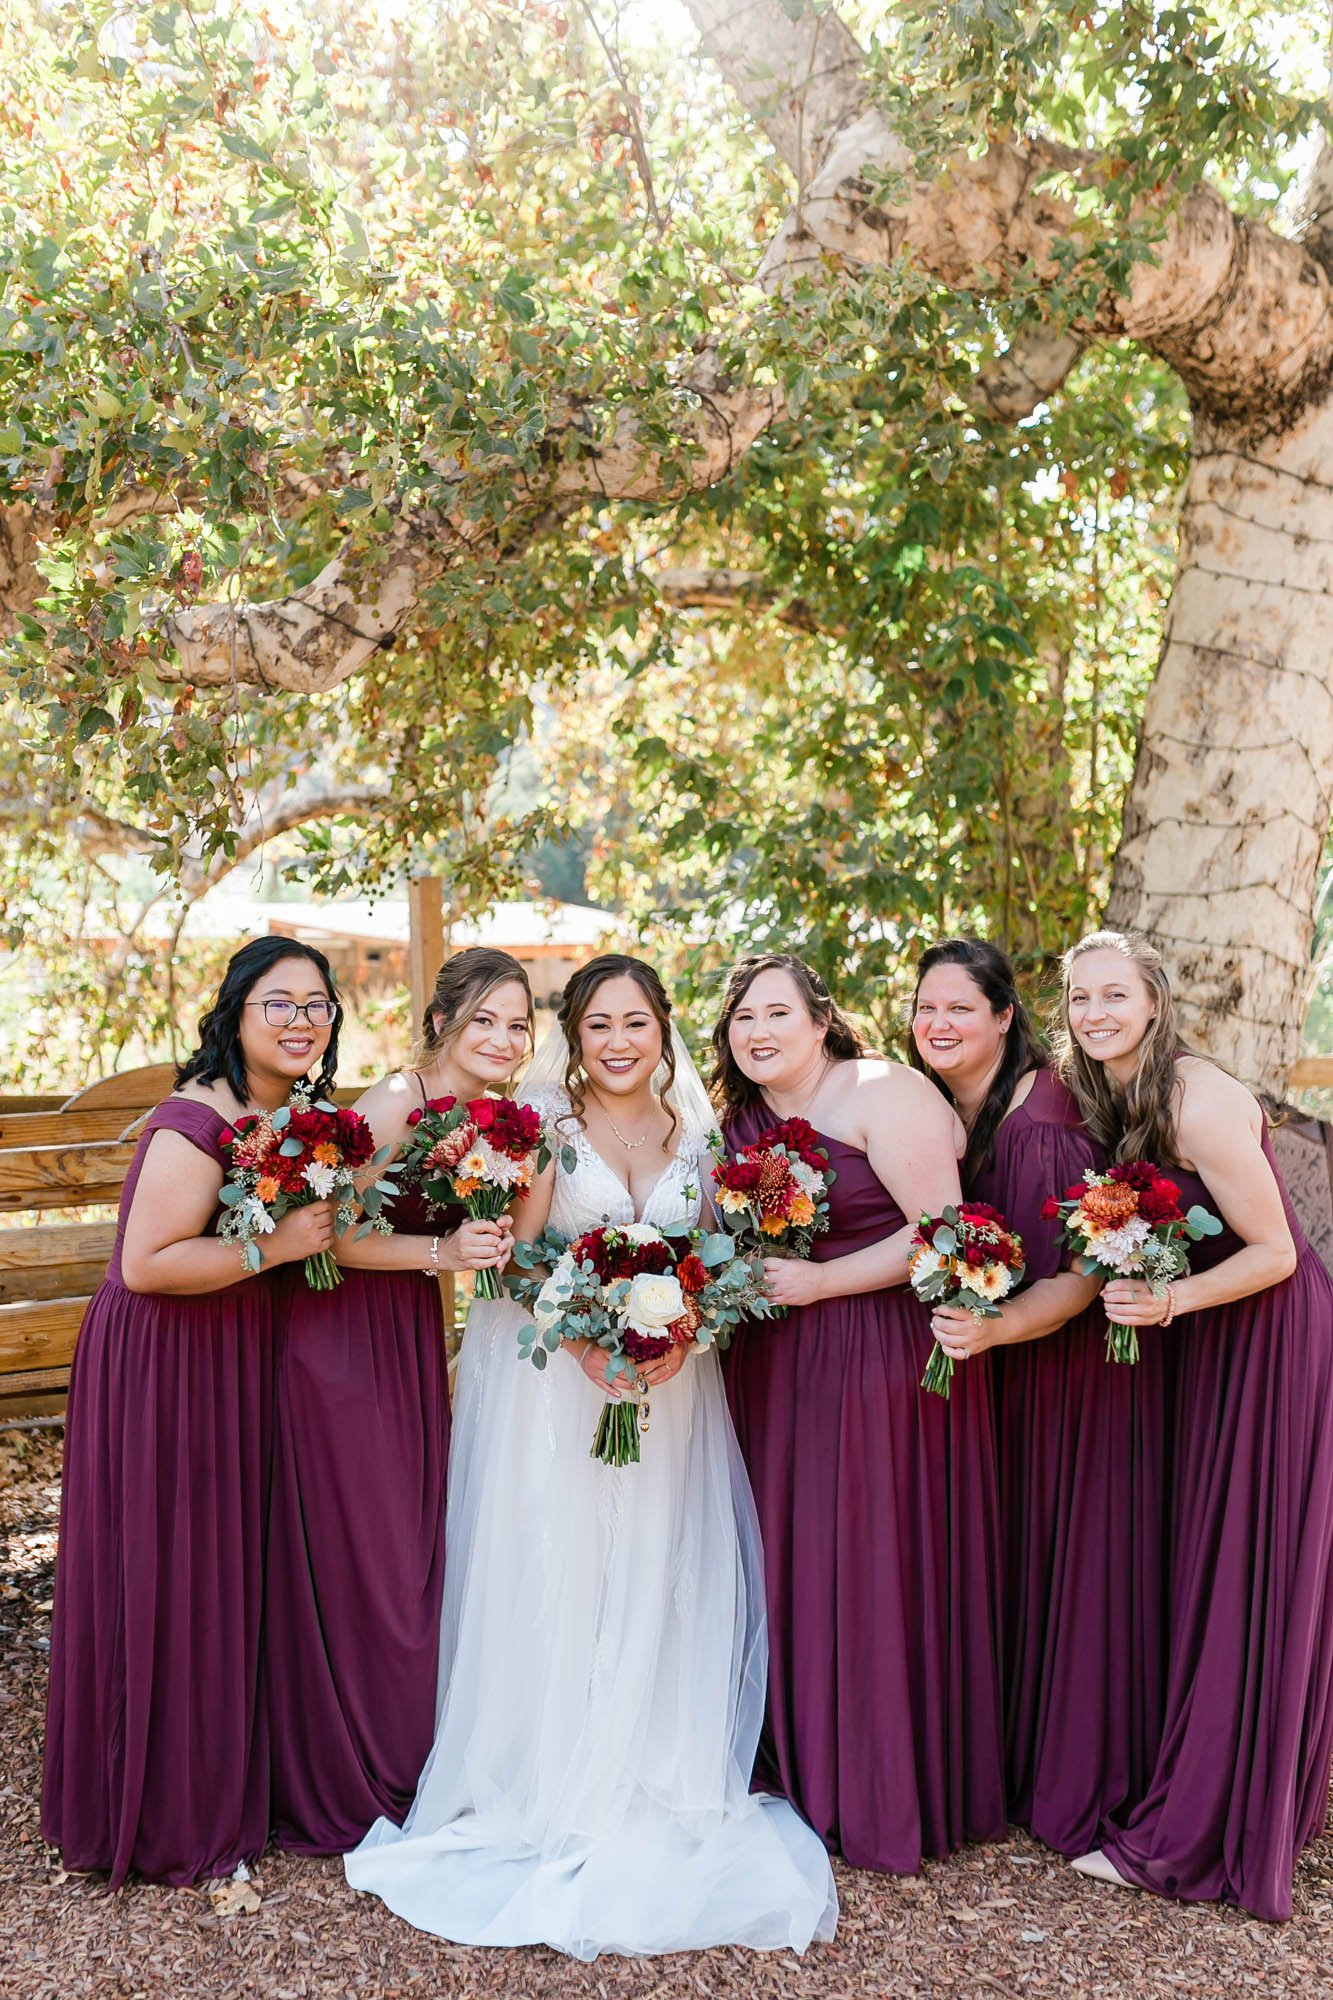 Wedding party photo of bridesmaids at reptacular ranch wedding venue